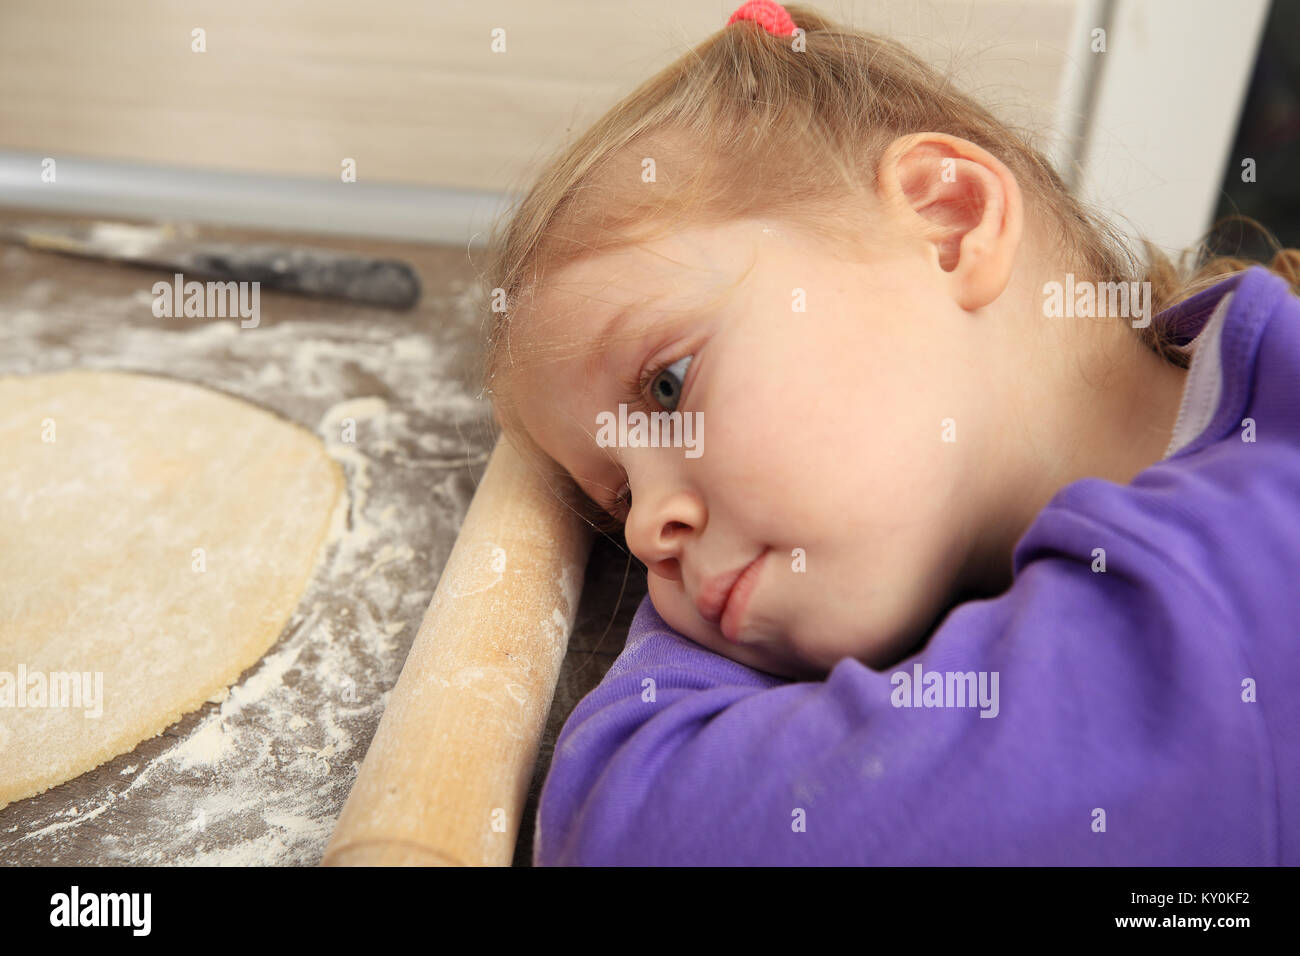 Portrait de l'enfant fatigué dans la cuisine. Petite fille blonde dormir près de la pâte. Banque D'Images